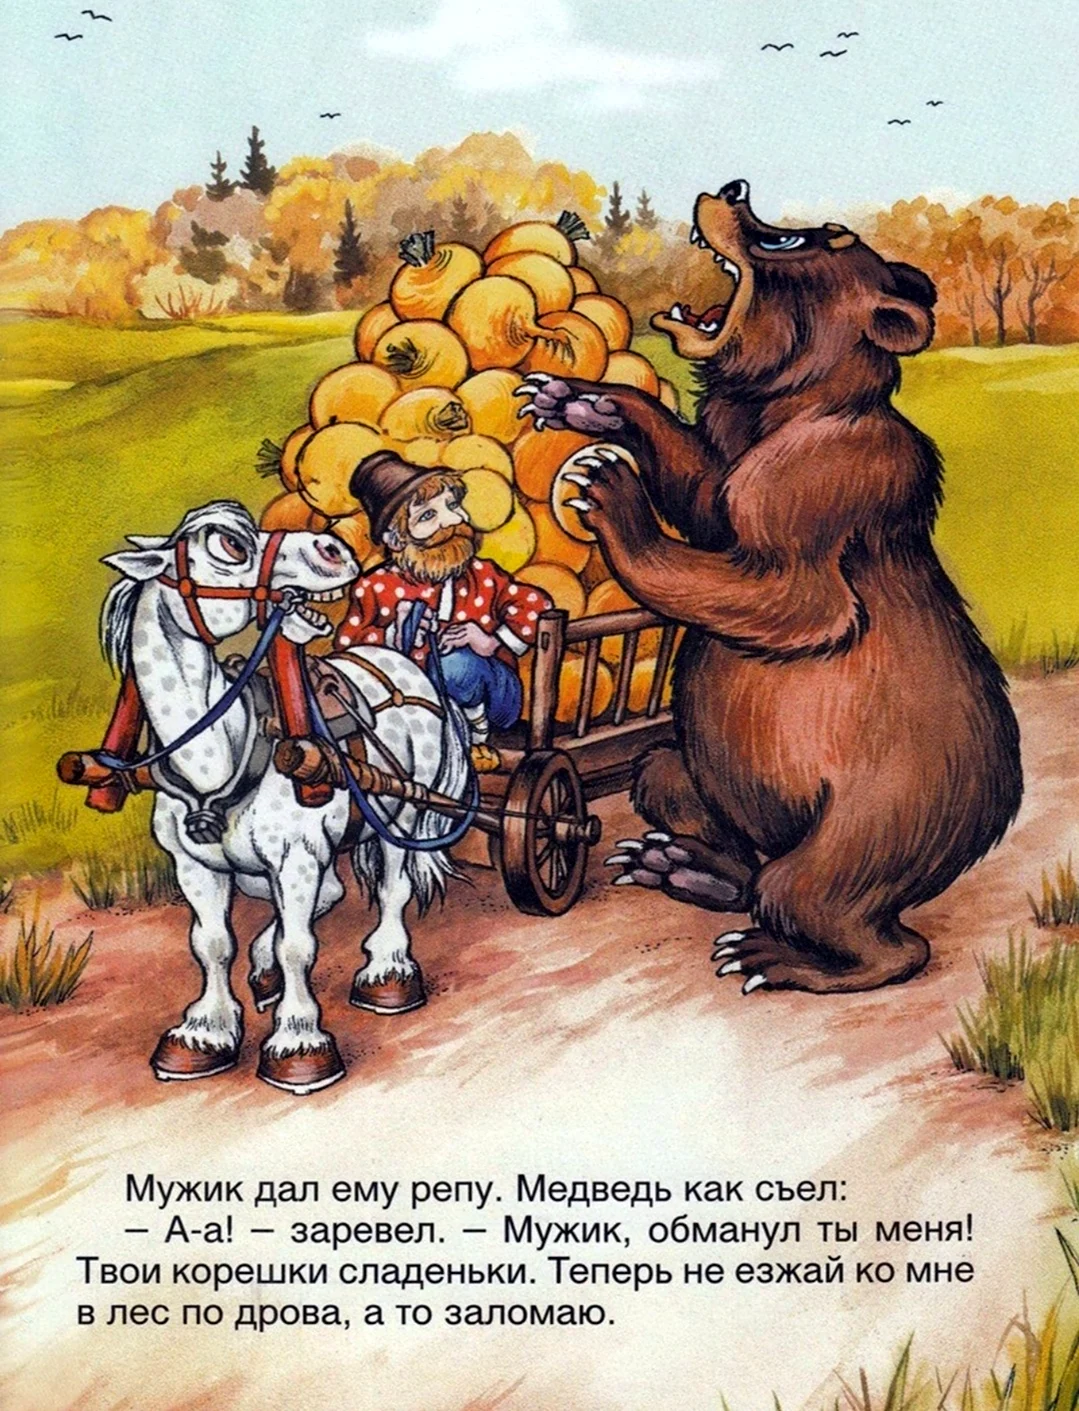 Мужик и медведь русская народная сказка. Картинка